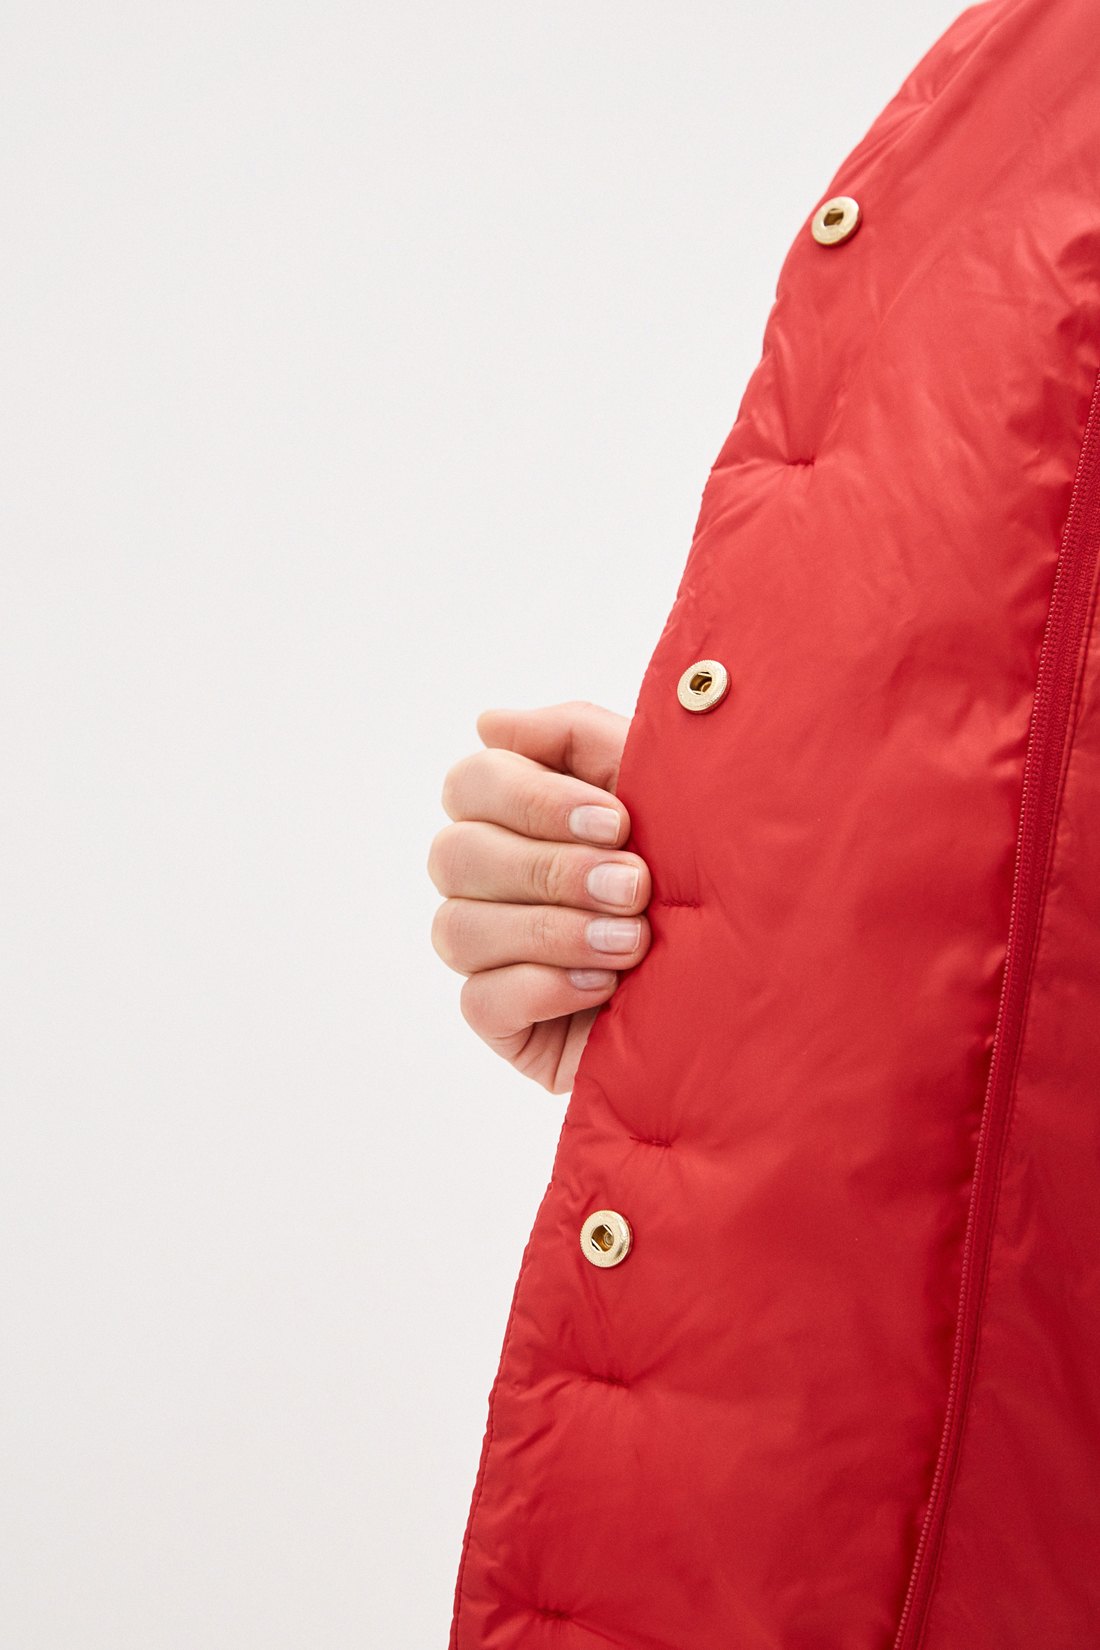 Куртка с воротником (арт. baon B030002), размер XXL, цвет красный Куртка с воротником (арт. baon B030002) - фото 4